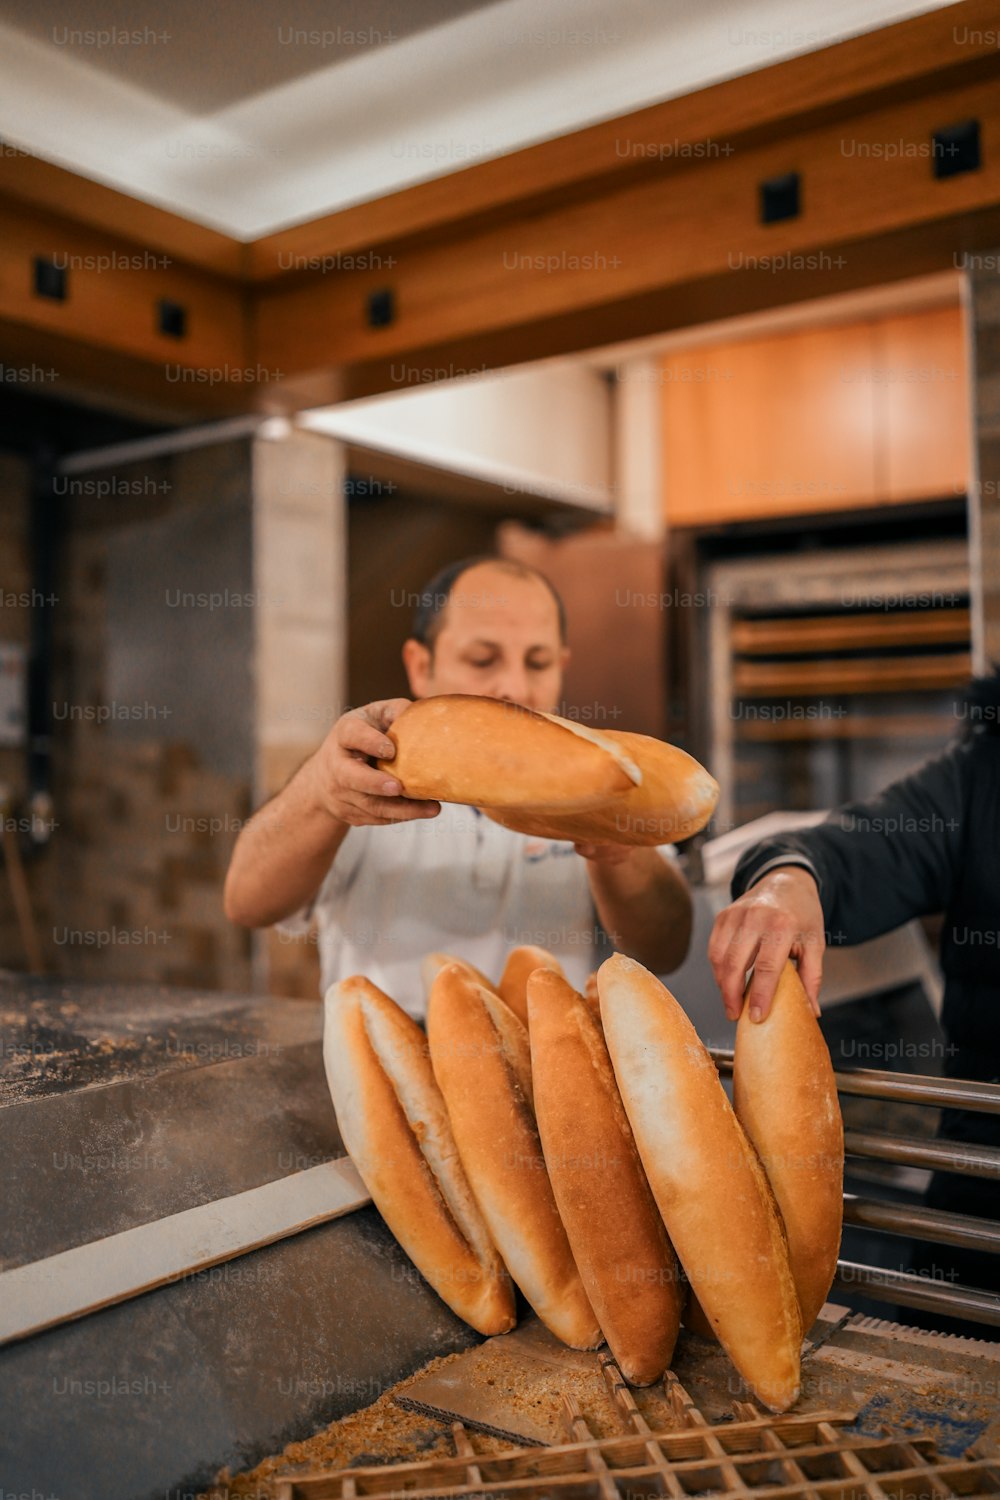 Un homme dans une cuisine mettant du pain sur une étagère